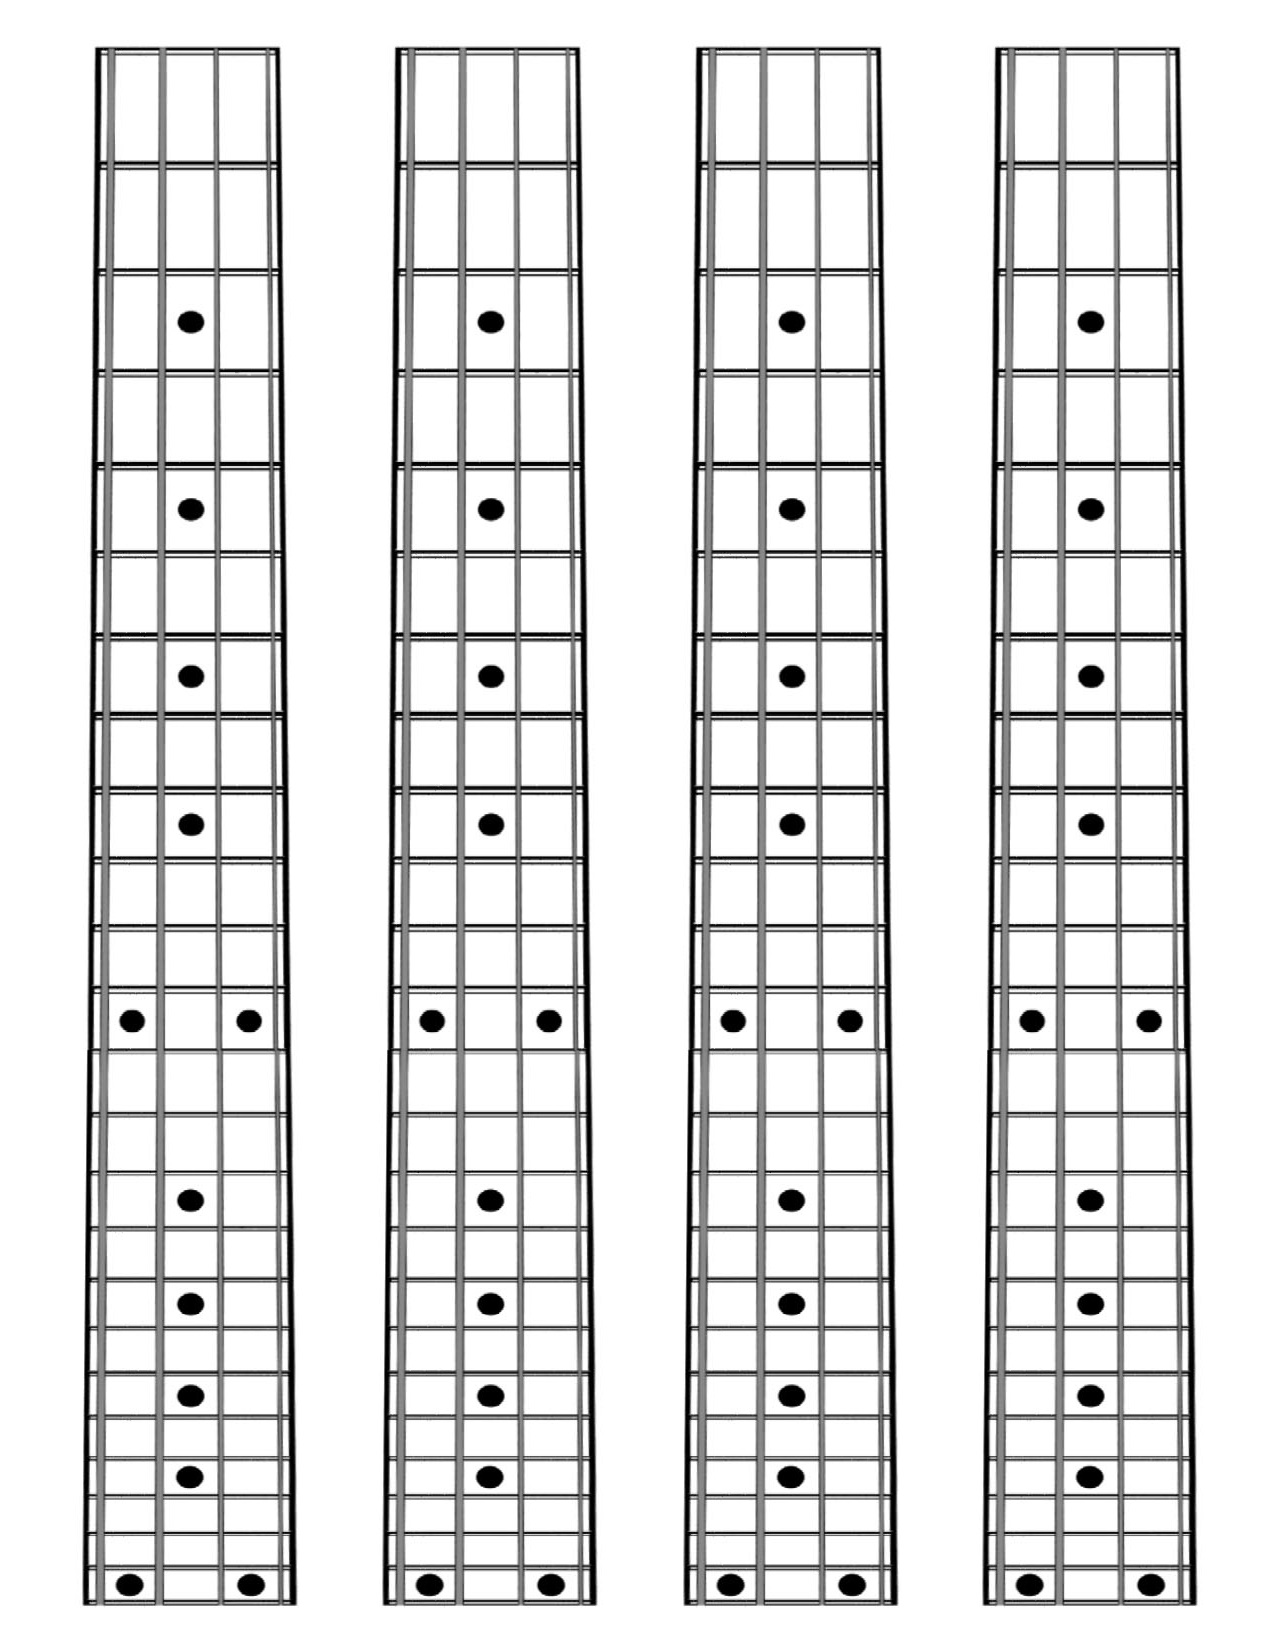 bass-guitar-fretboard-diagram-printable